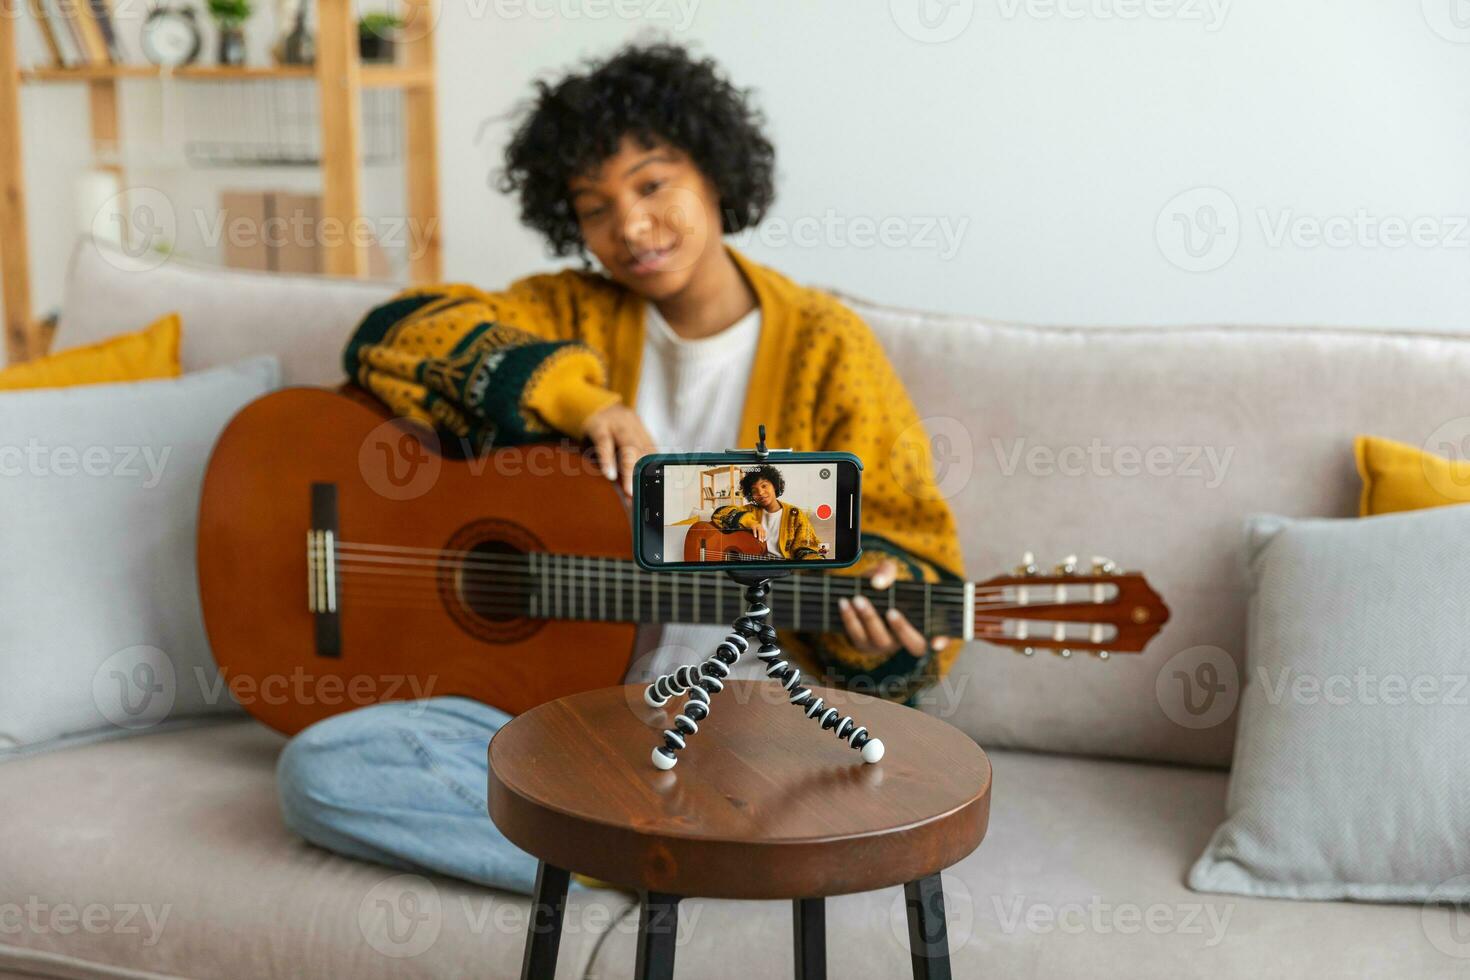 blogger guitarrista. africano americano niña blogger jugando guitarra hablando a cámara web grabación vlog. social medios de comunicación hombre de influencia mujer transmisión a hogar adentro. música contenido creador transmitir tutorial. foto